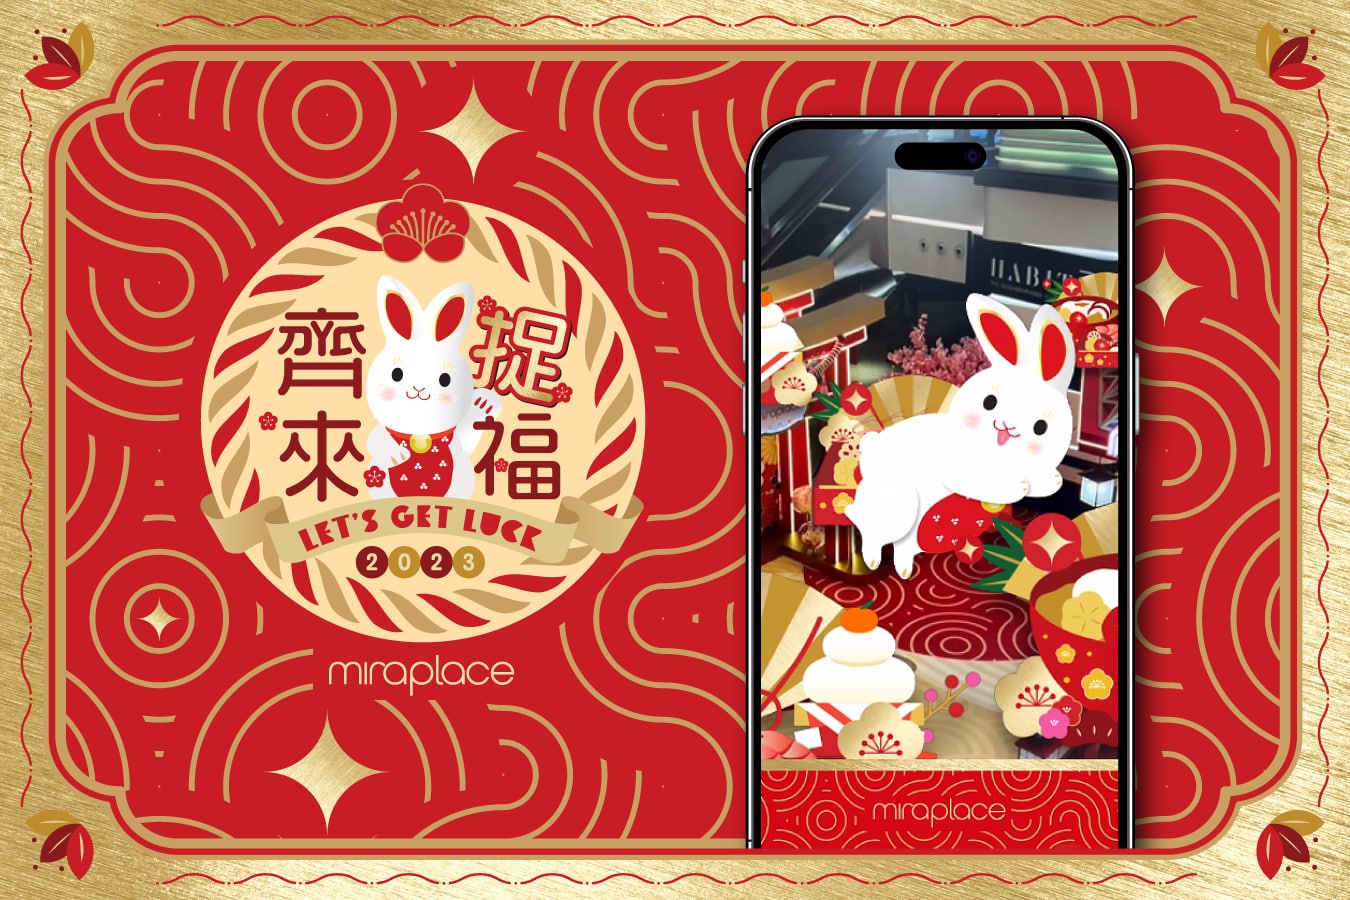 齊來捉福 Mira Place CNY Year Of The Rabbit Campaign